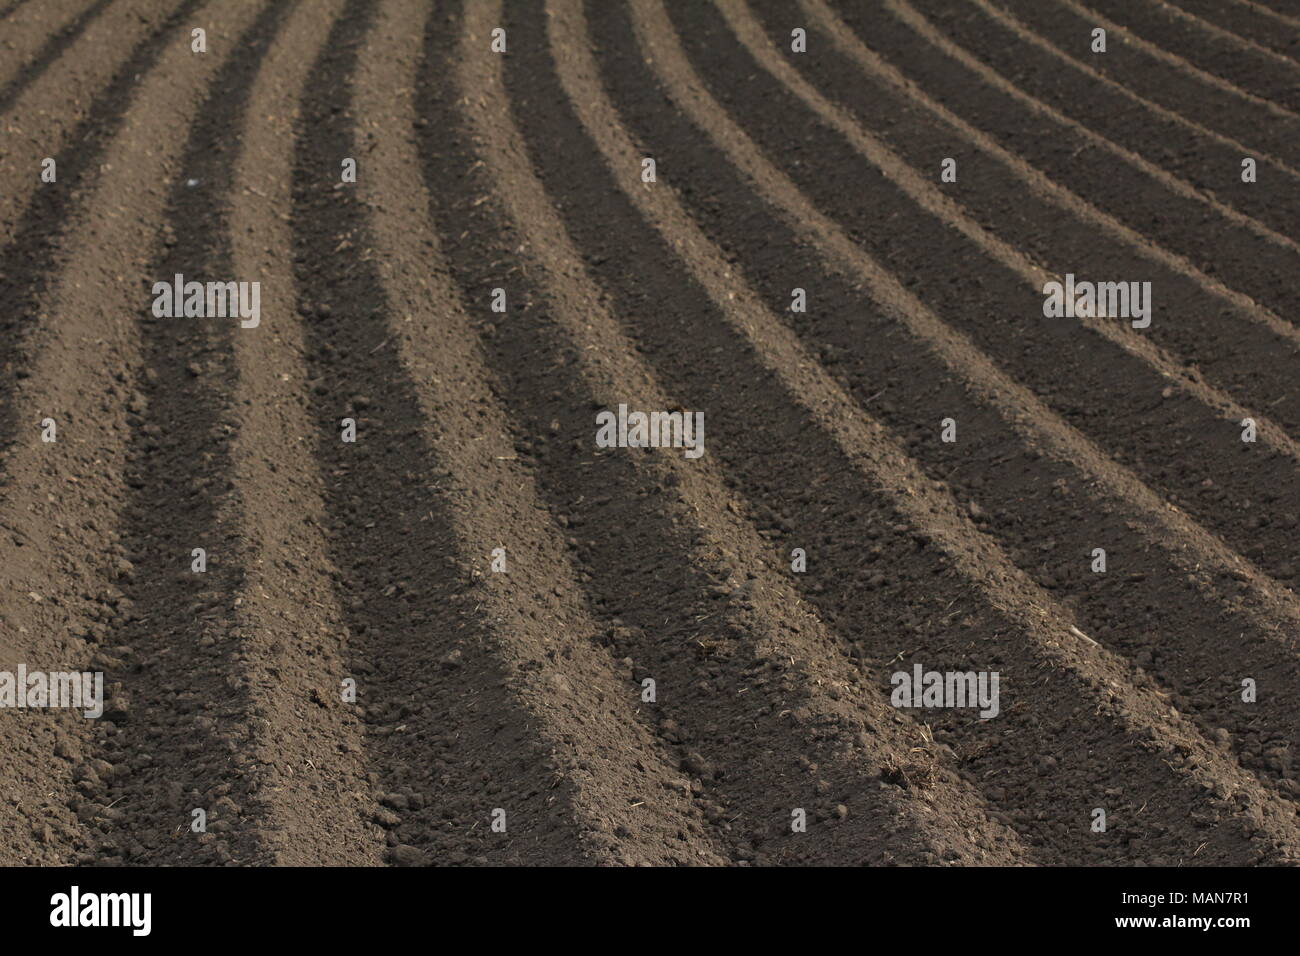 Coltivazione agricola: fresco terreno arato Foto Stock